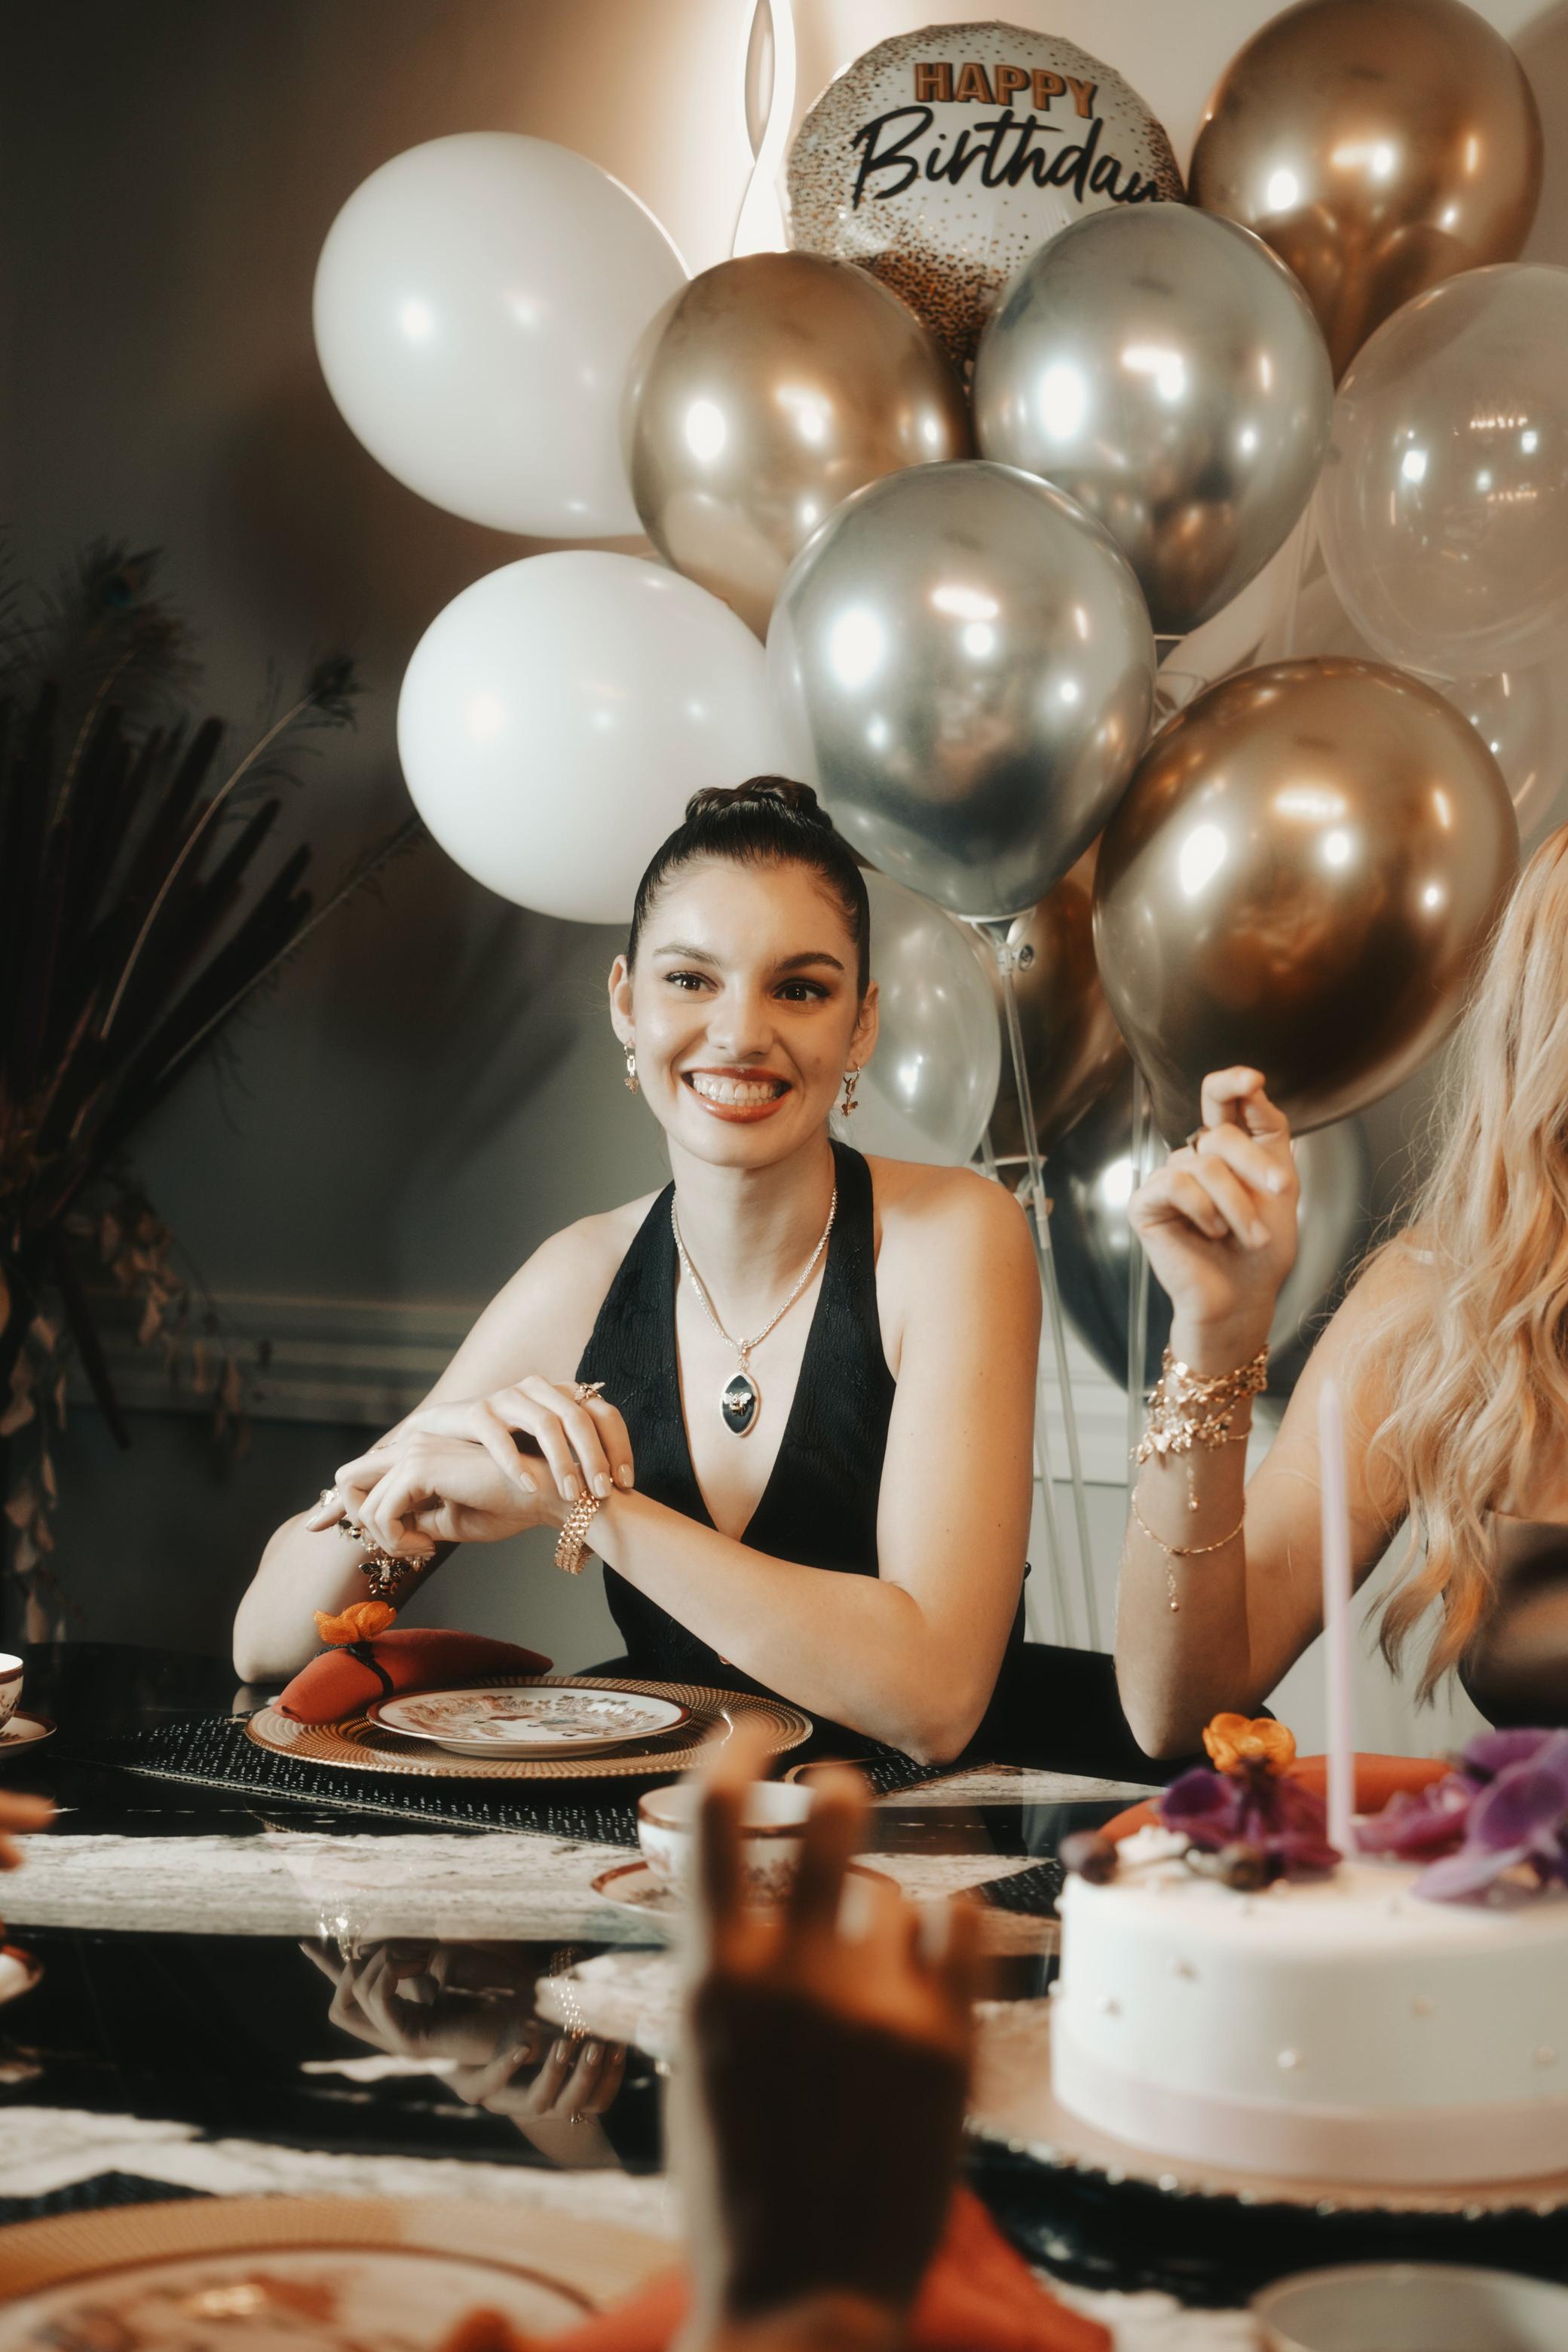 Balony z helem – unoszące się niespodzianki nad stołem z tortem